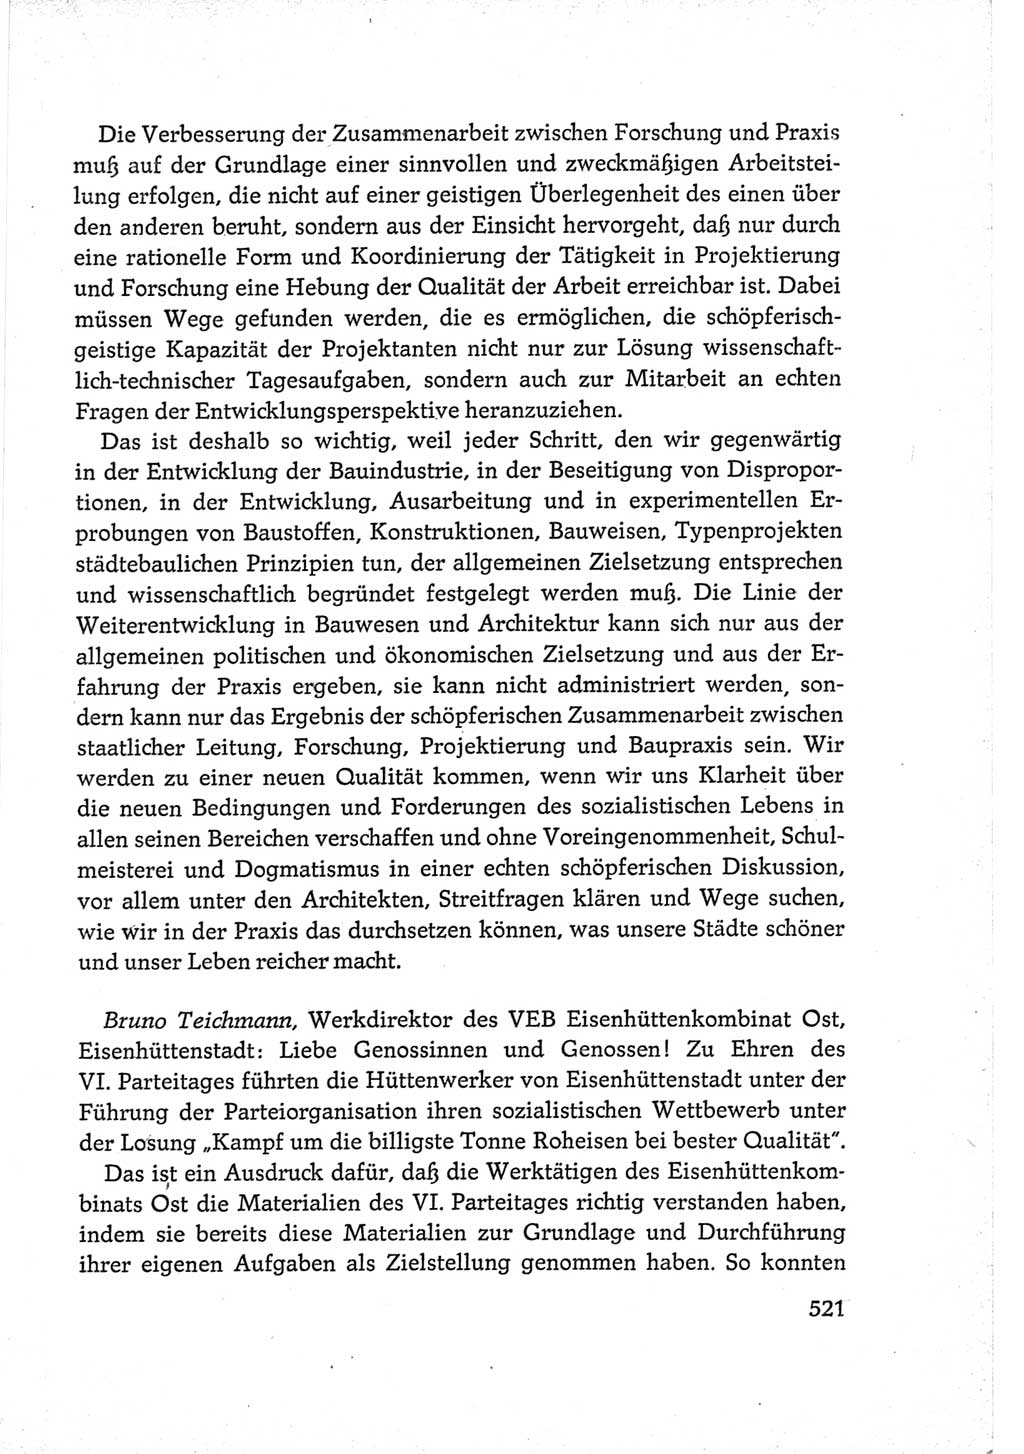 Protokoll der Verhandlungen des Ⅵ. Parteitages der Sozialistischen Einheitspartei Deutschlands (SED) [Deutsche Demokratische Republik (DDR)] 1963, Band Ⅲ, Seite 521 (Prot. Verh. Ⅵ. PT SED DDR 1963, Bd. Ⅲ, S. 521)